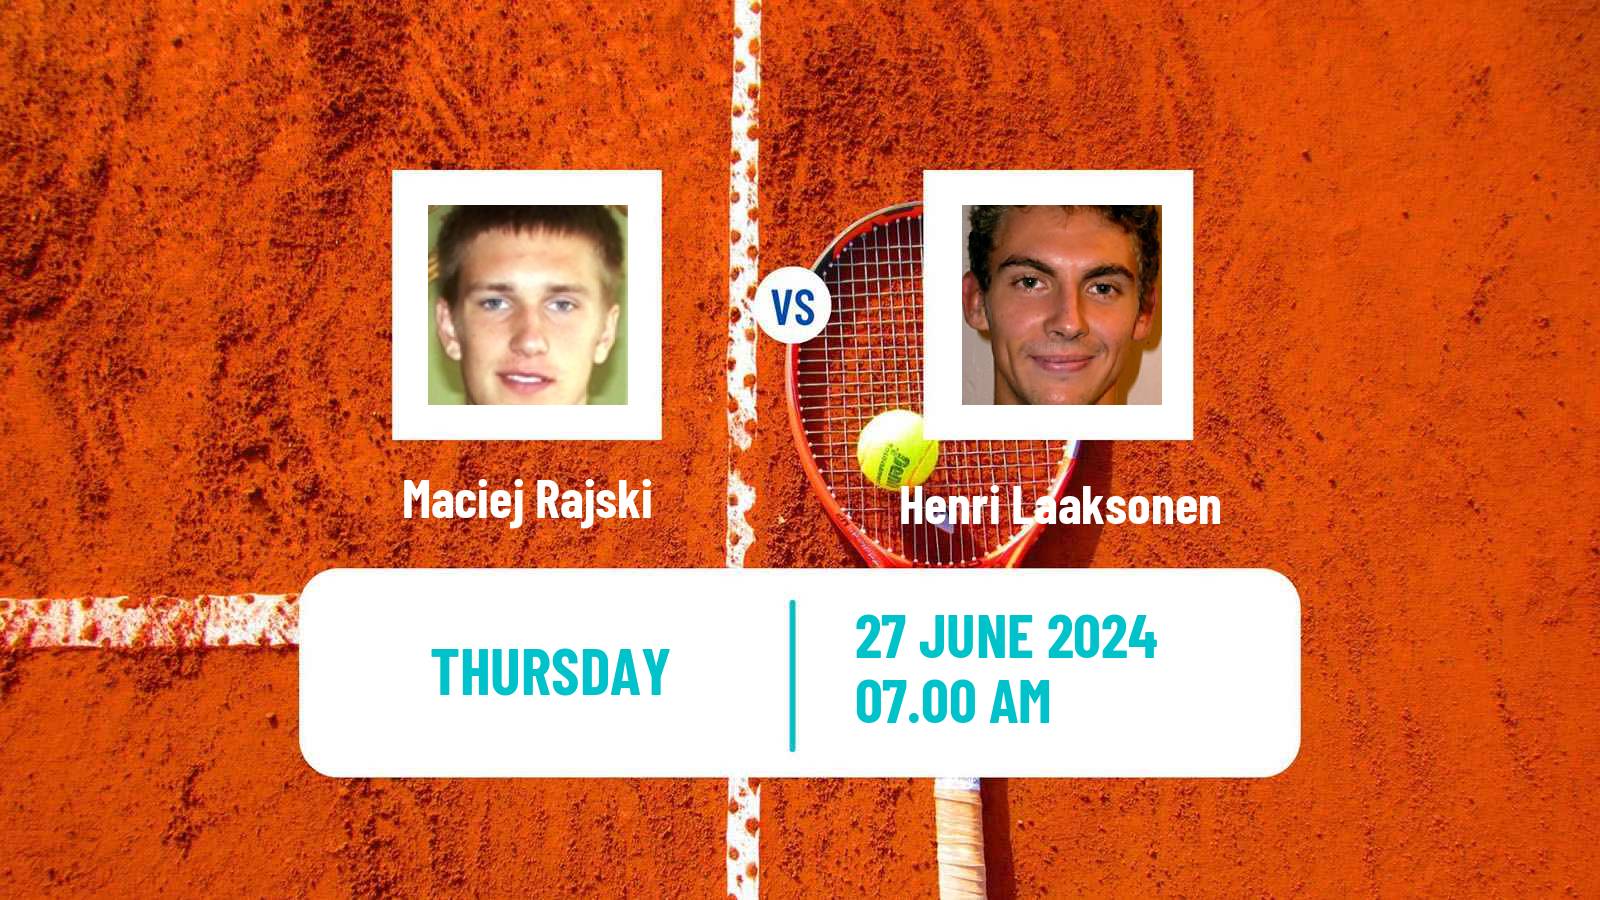 Tennis ITF M15 Wroclaw Men Maciej Rajski - Henri Laaksonen